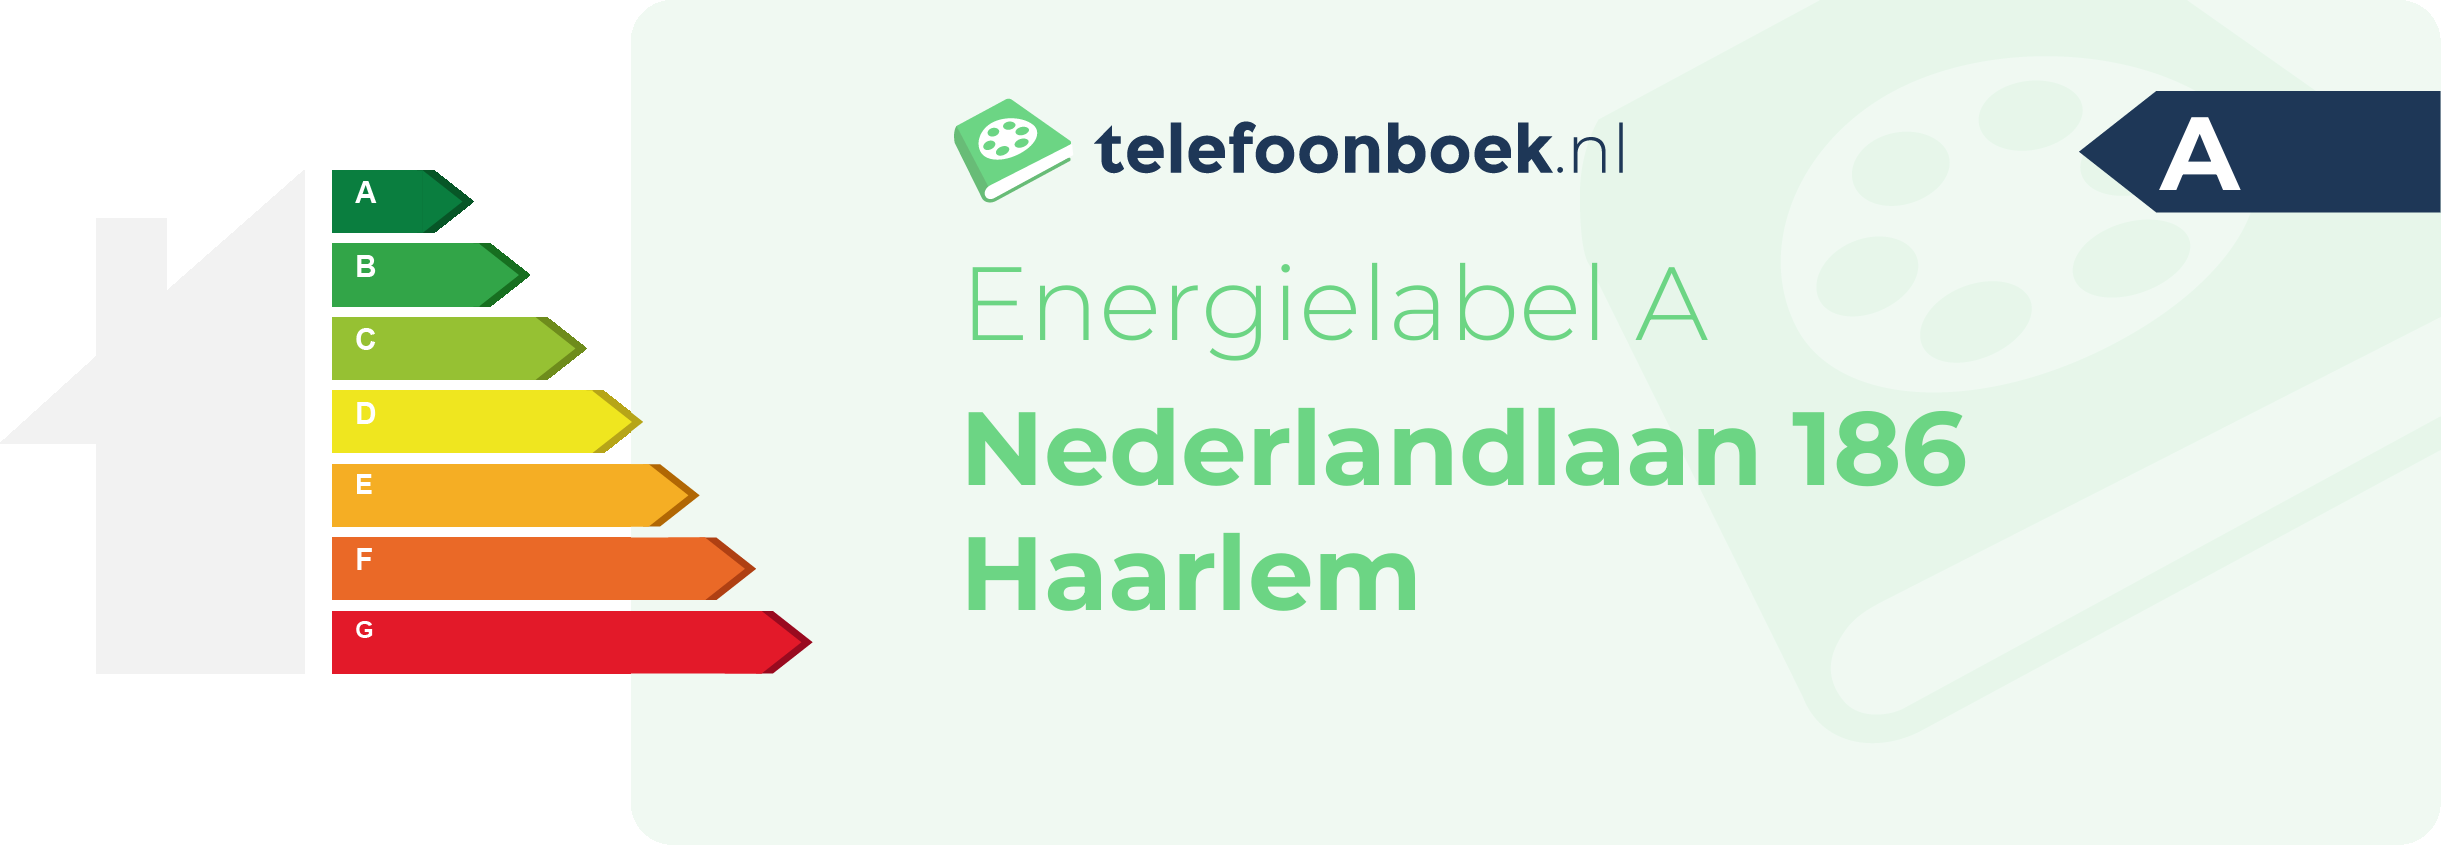 Energielabel Nederlandlaan 186 Haarlem